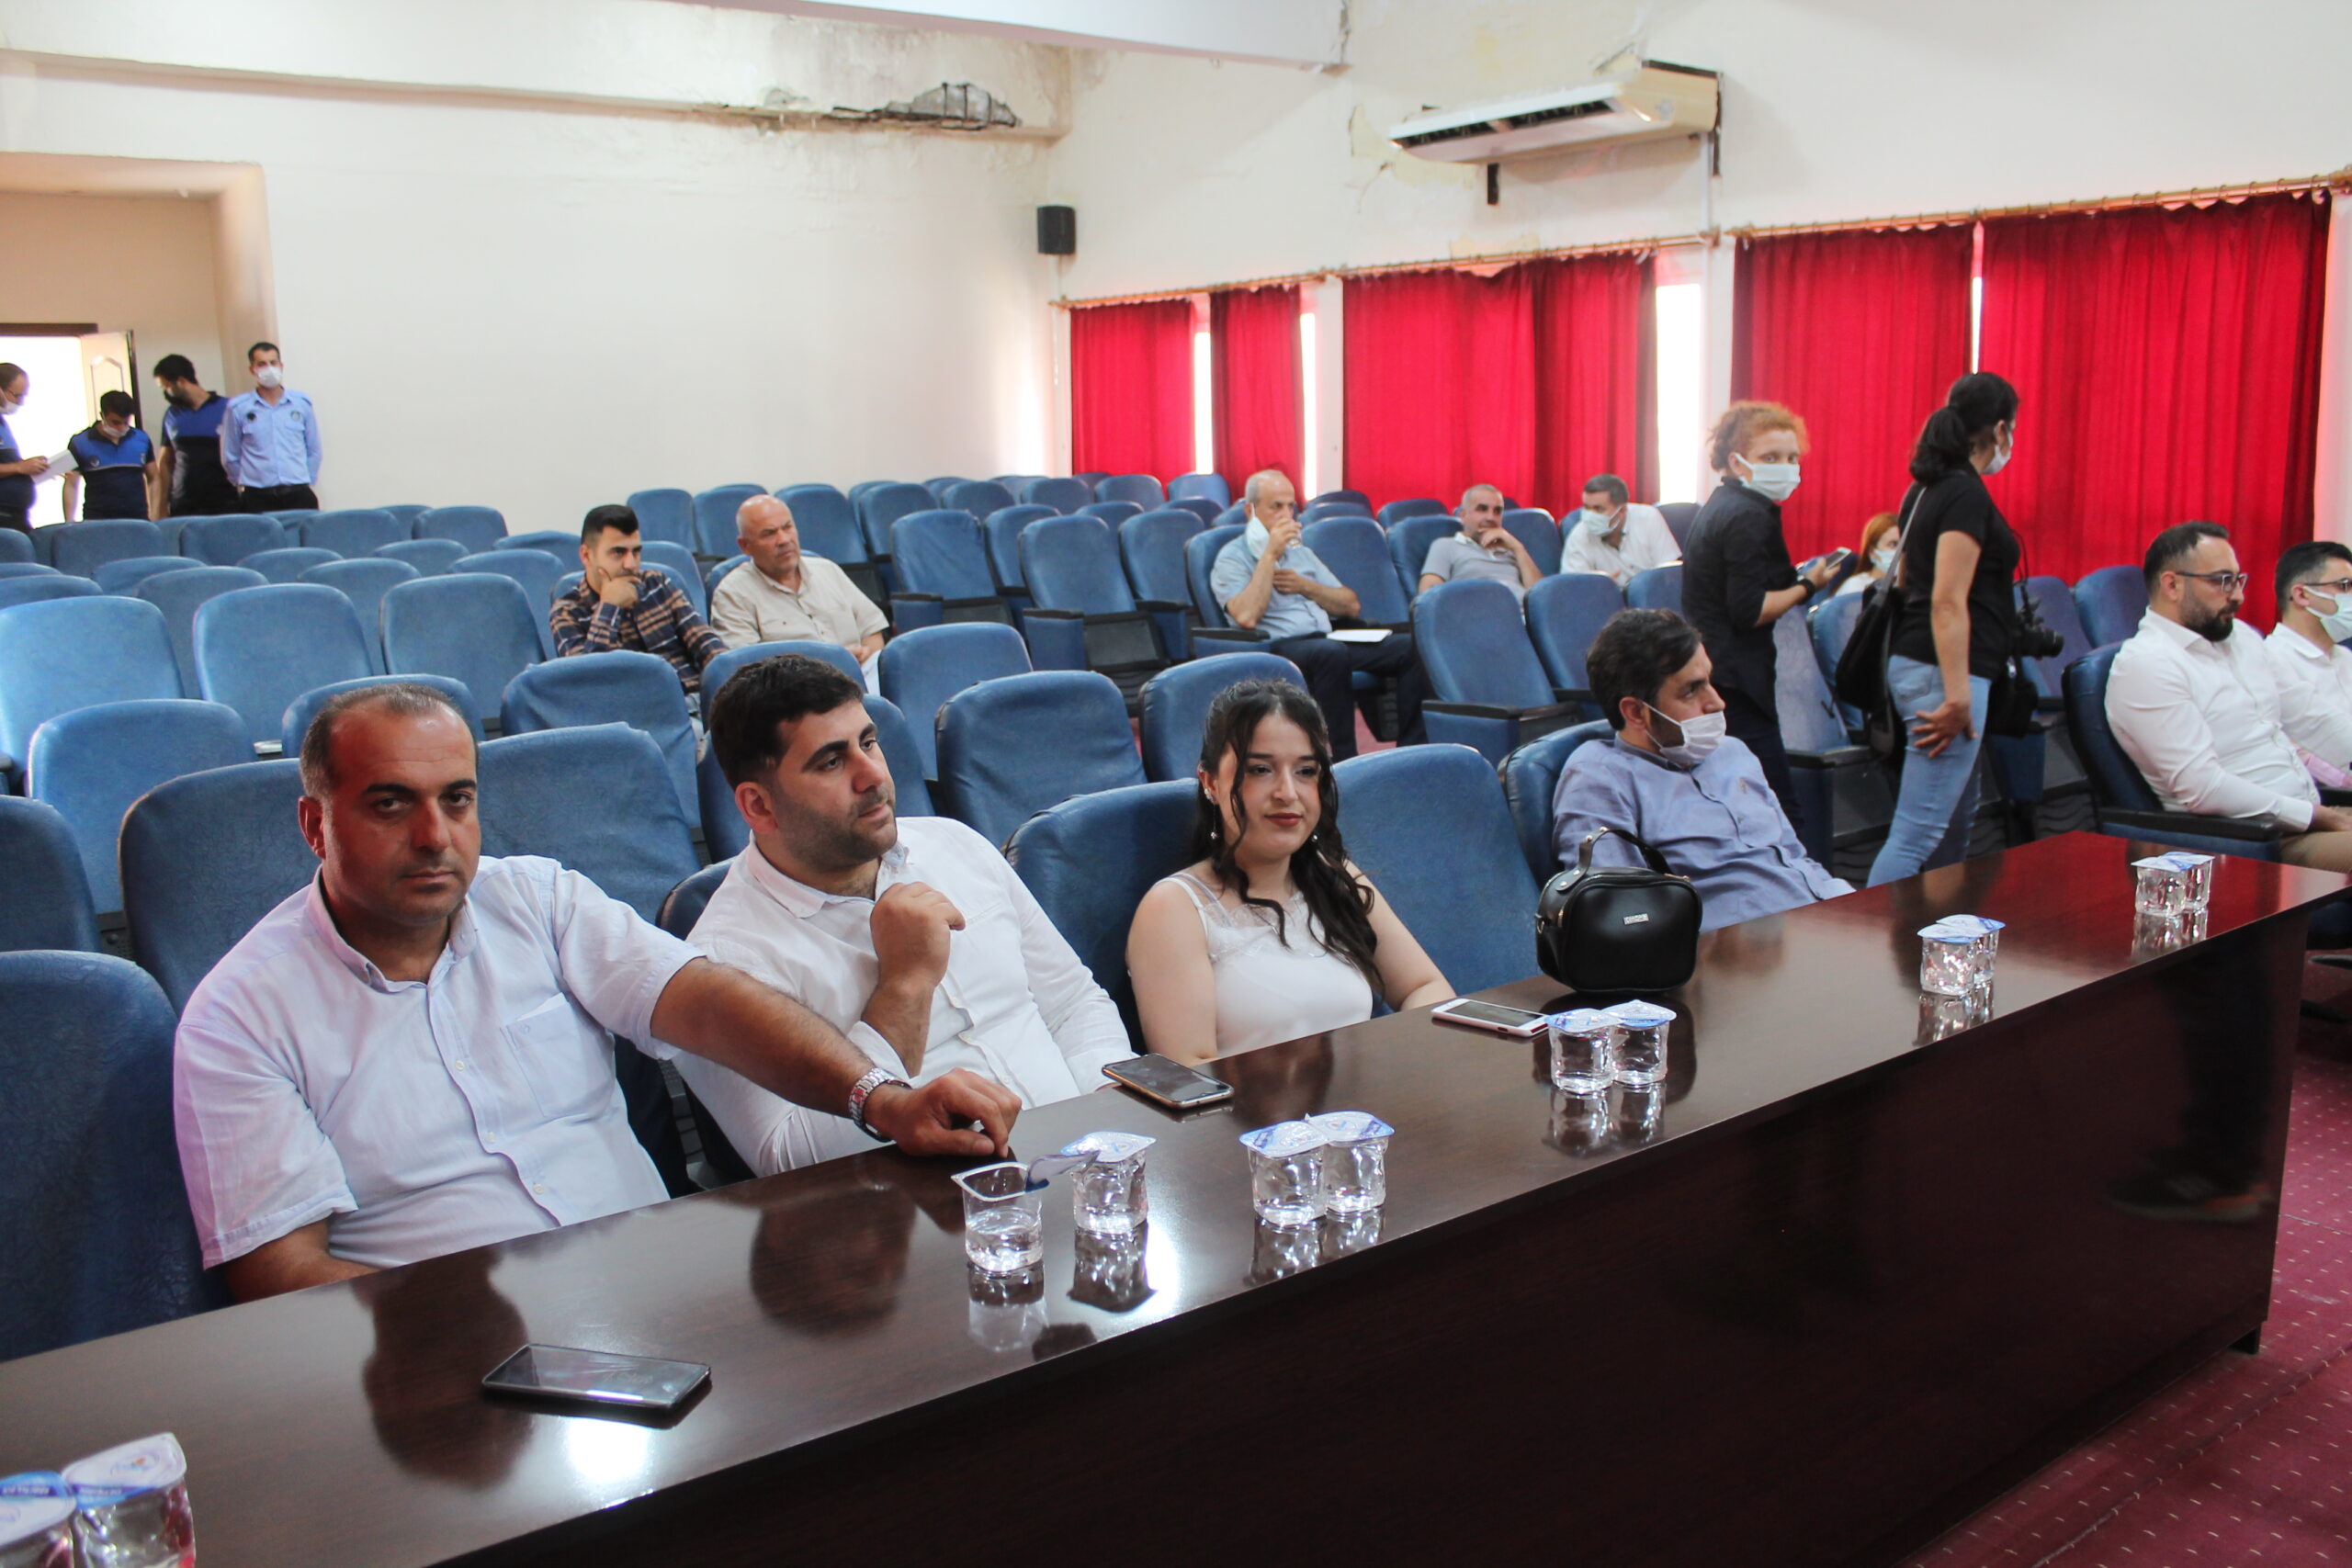  Samandağ Belediyesi Haziran Ayı Olağan Meclis Toplantısı Cuma Günü Gerçekleşti